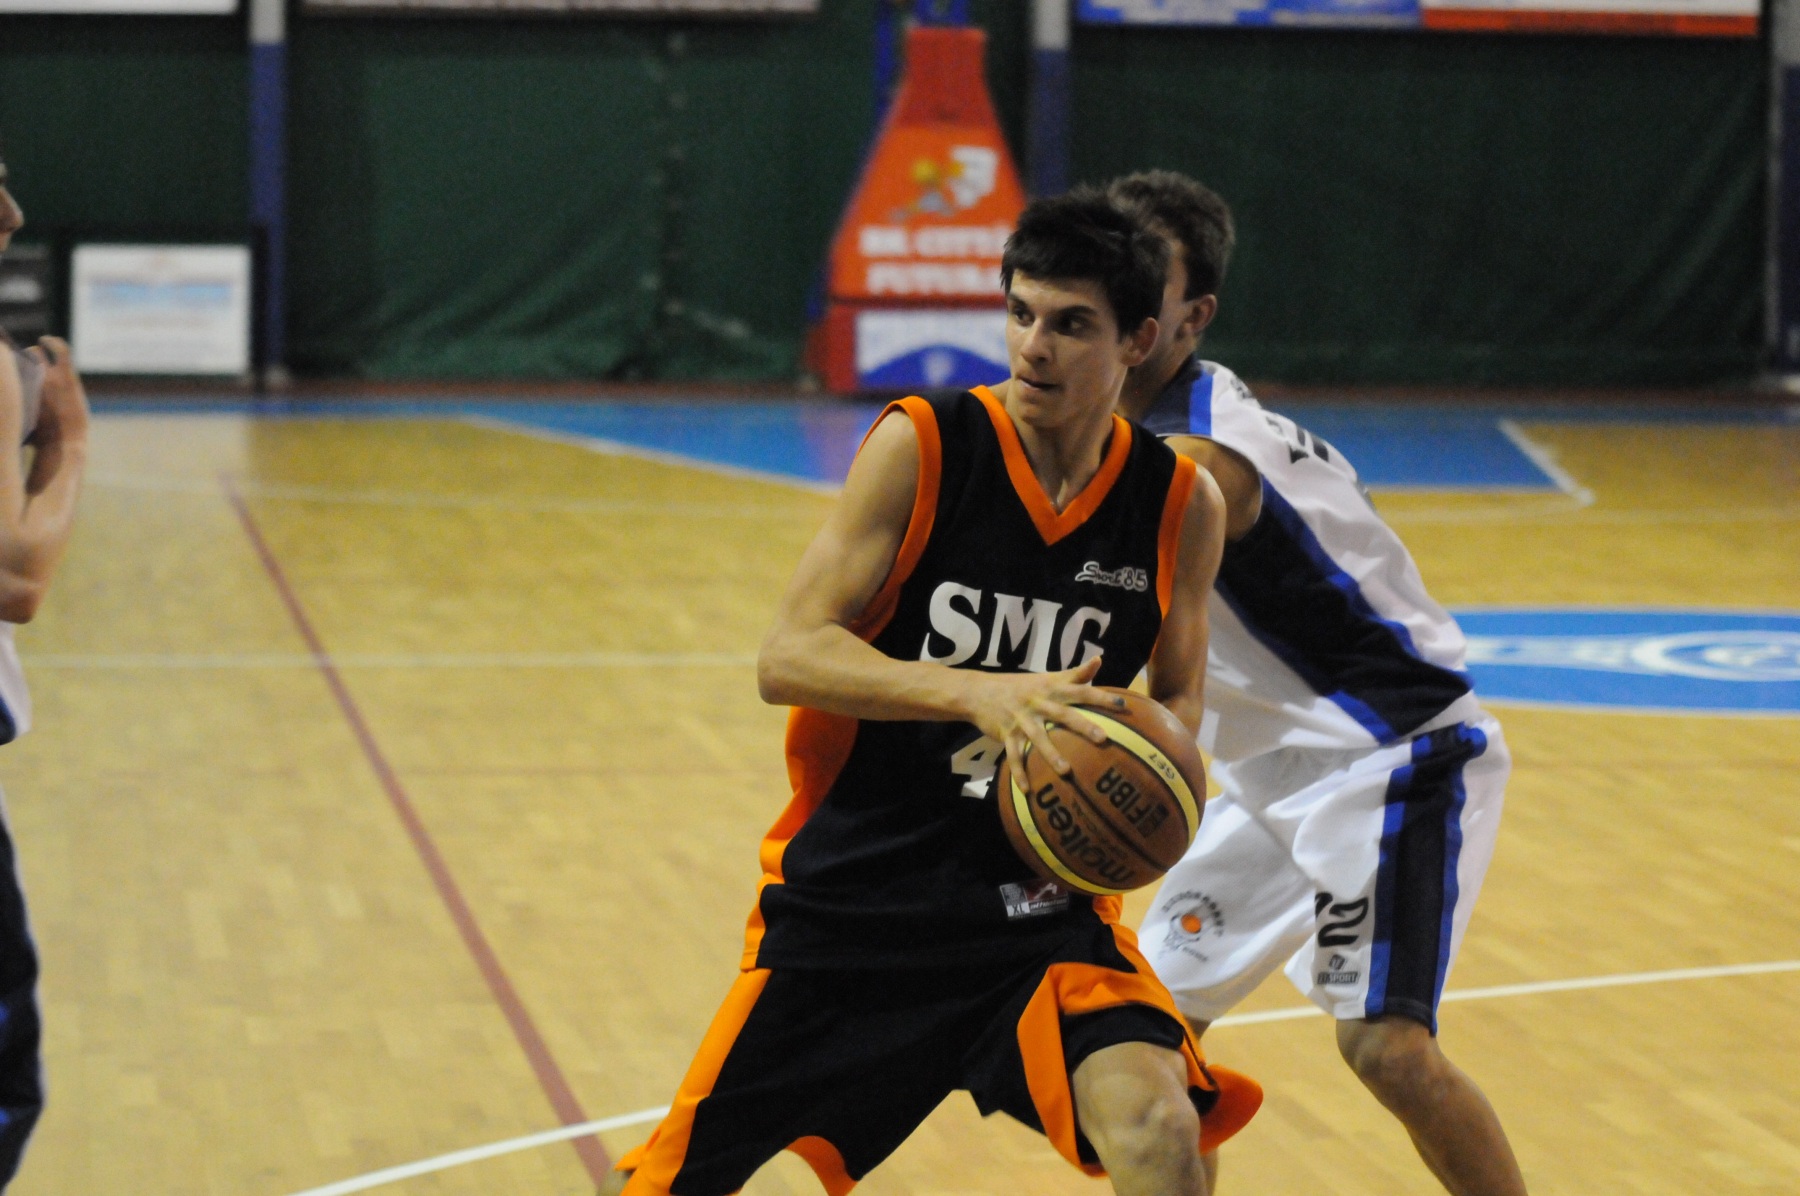 2010-02-20-U15Ecc-Eurobasket-SMG-317